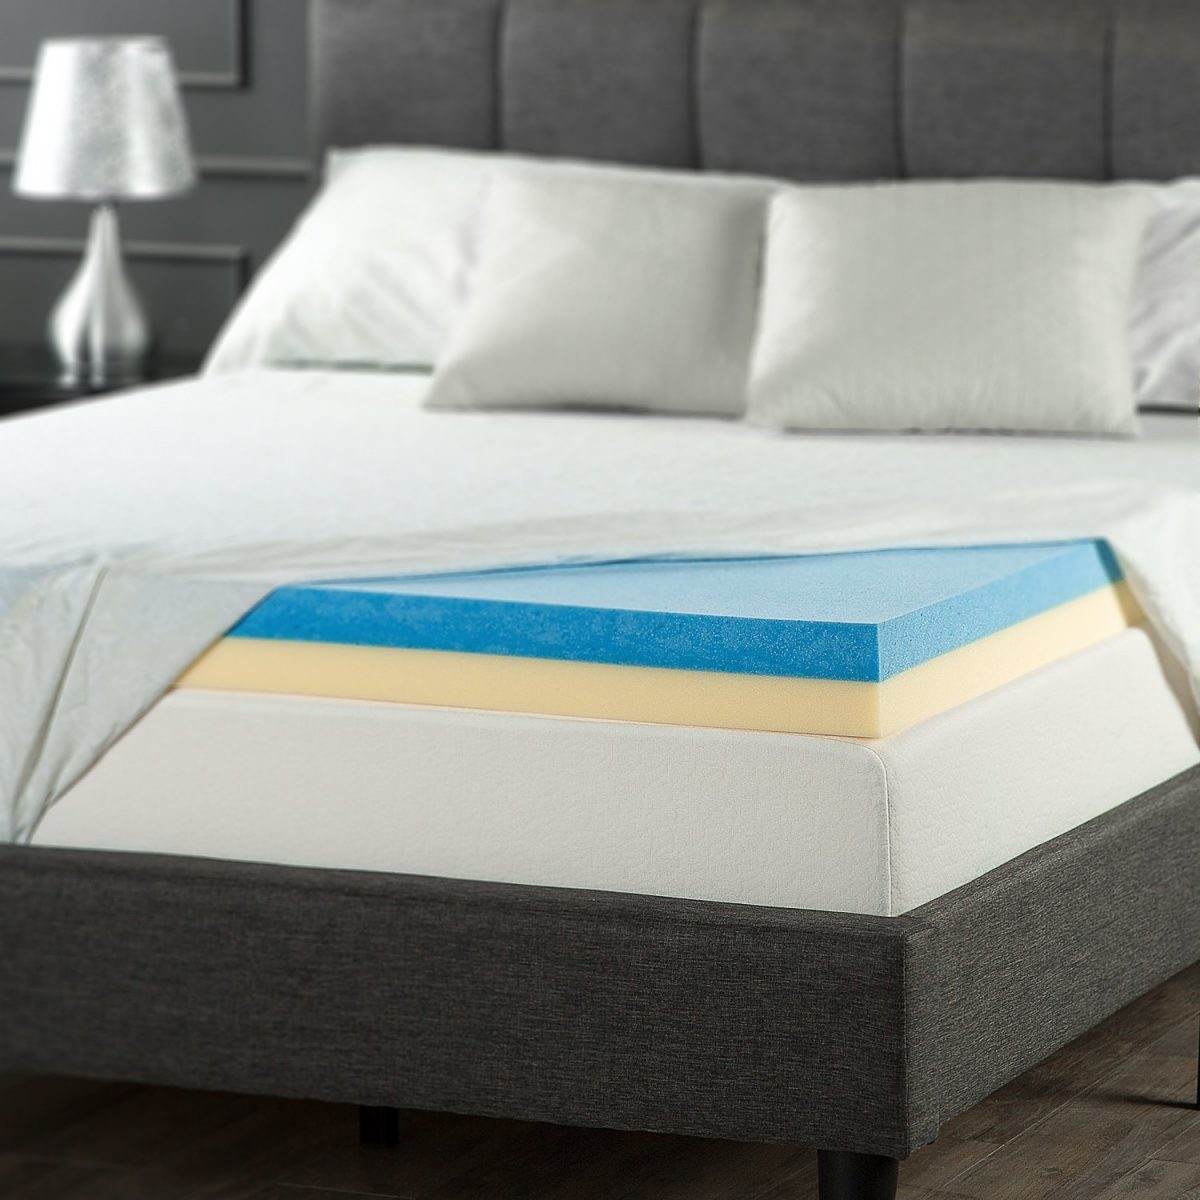 cooling mattress pad for tempurpedic reviews